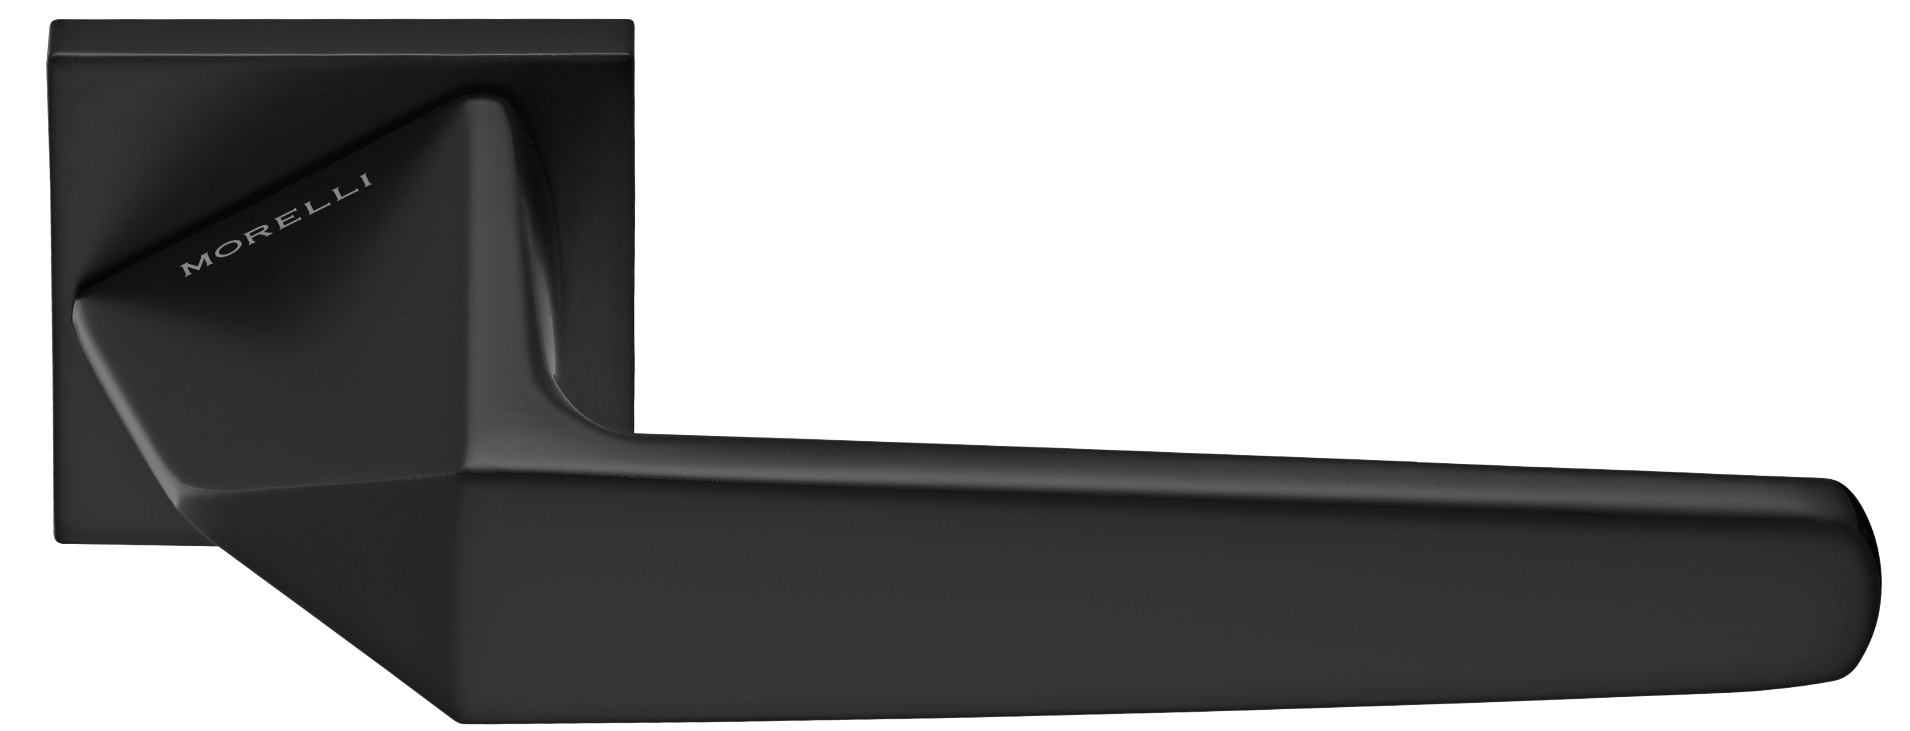 SOUK ручка дверная на квадратной розетке 6 мм, MH-55-S6 BL, цвет - черный фото купить Краснодар